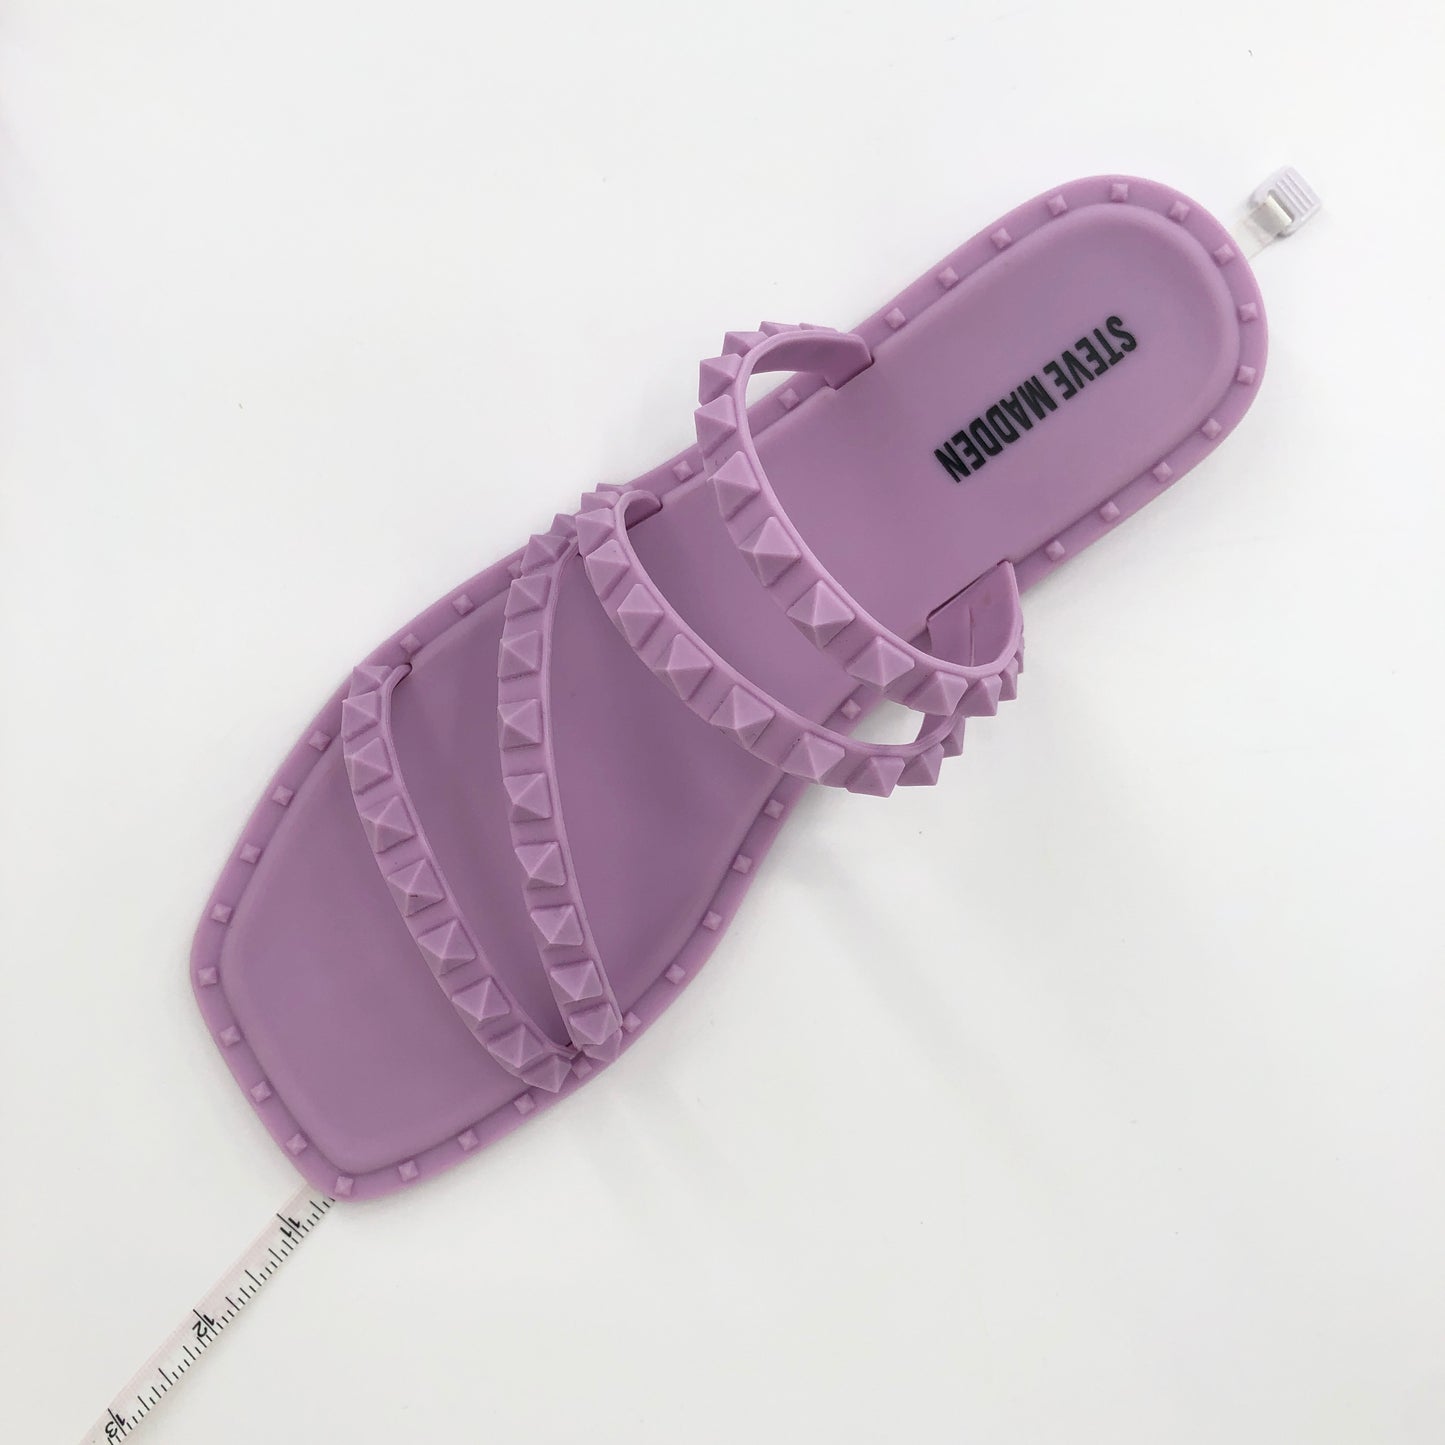 Steven Madden Skyler-J Studded Jelly Slide Sandals Lilac 8